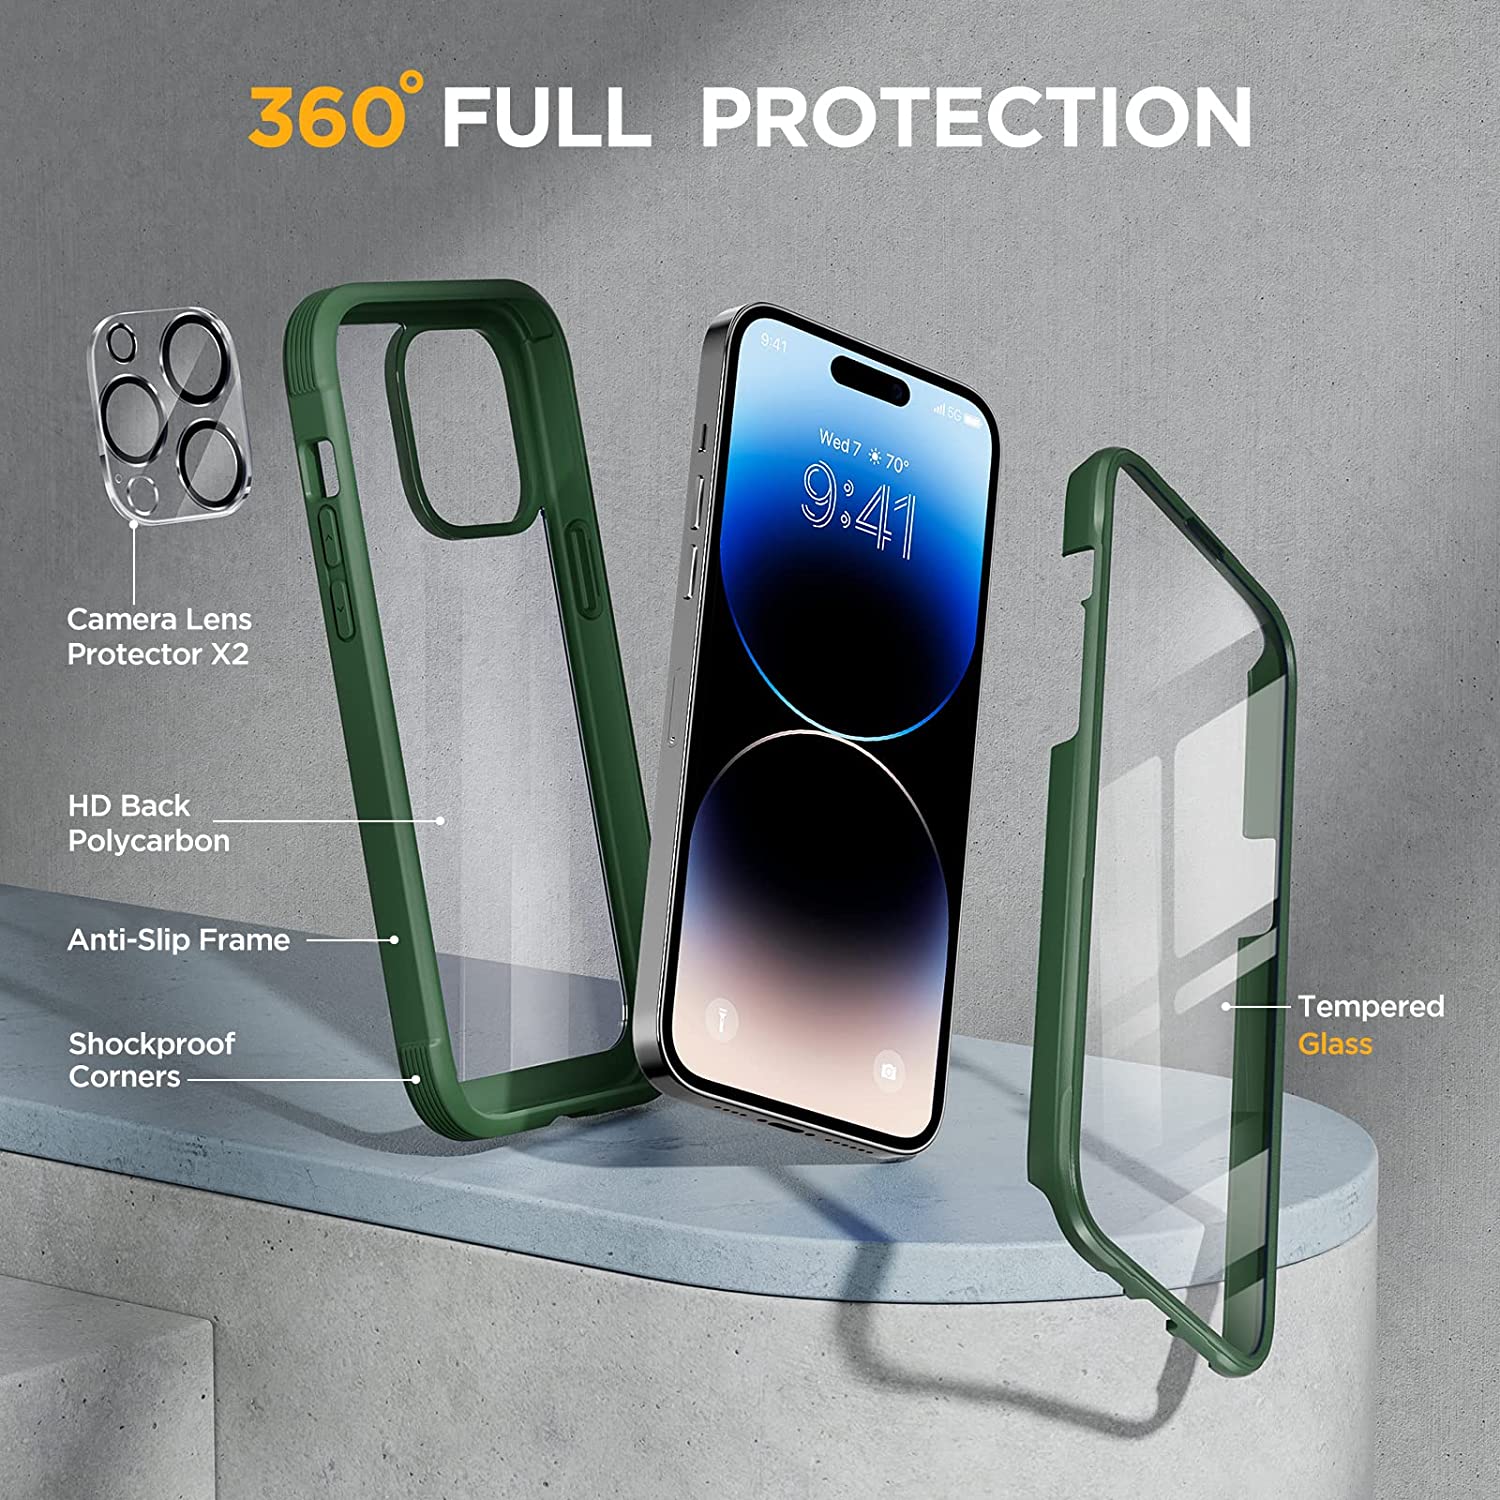 Protection Complète Ecran Caméra iPHONE 15 Pack x2